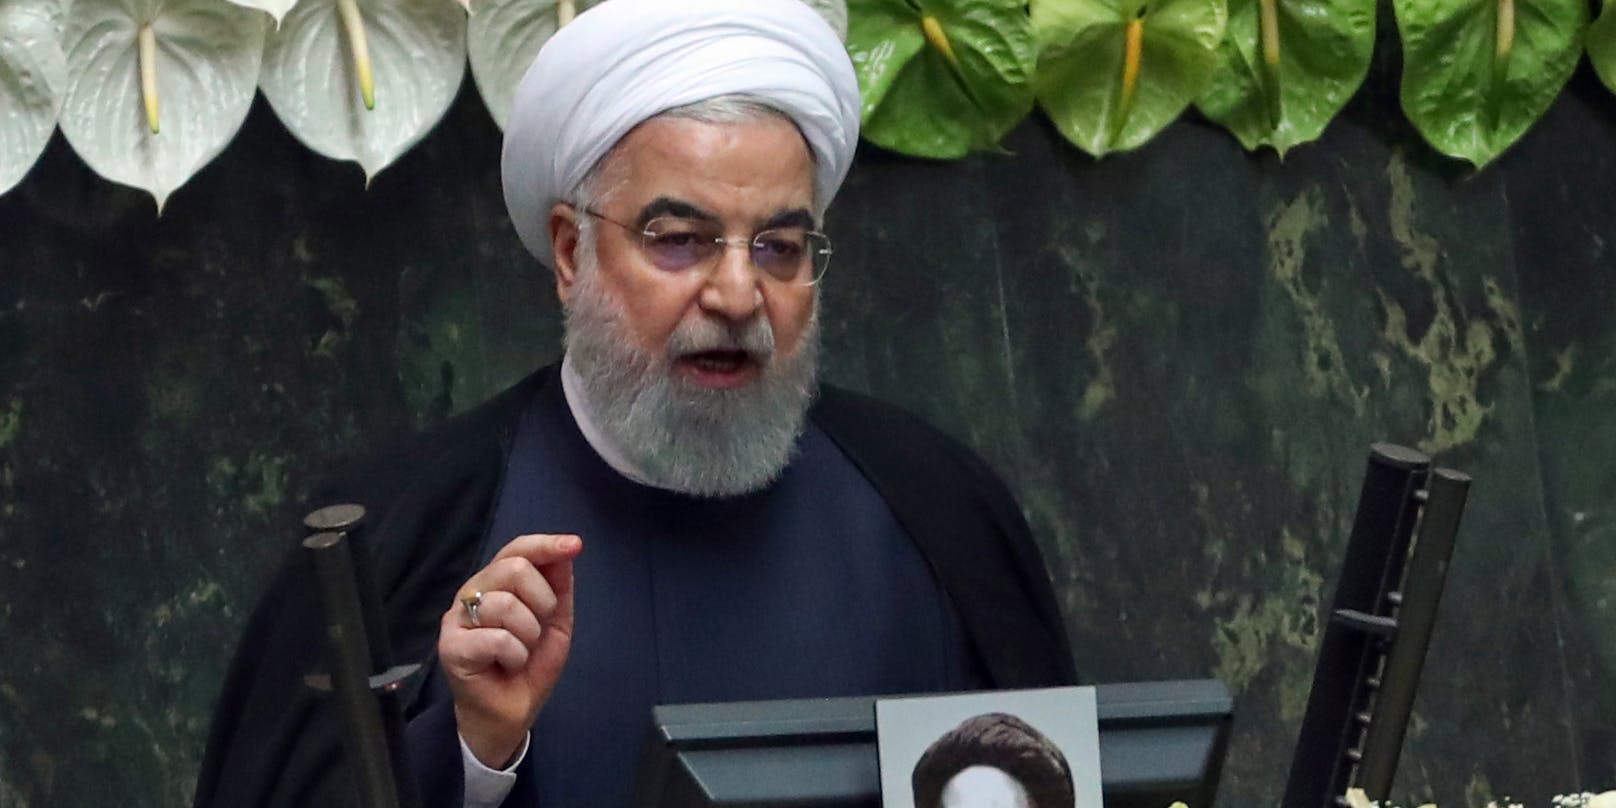 Ein Aufschrei in der iranischen Bevölkerung über die archaischen Gesetze der islamischen Republik war die Folge. Selbst Präsident Hassan Rohani soll laut der staatlichen Nachrichtenagentur eine Verschärfung gefordert haben.